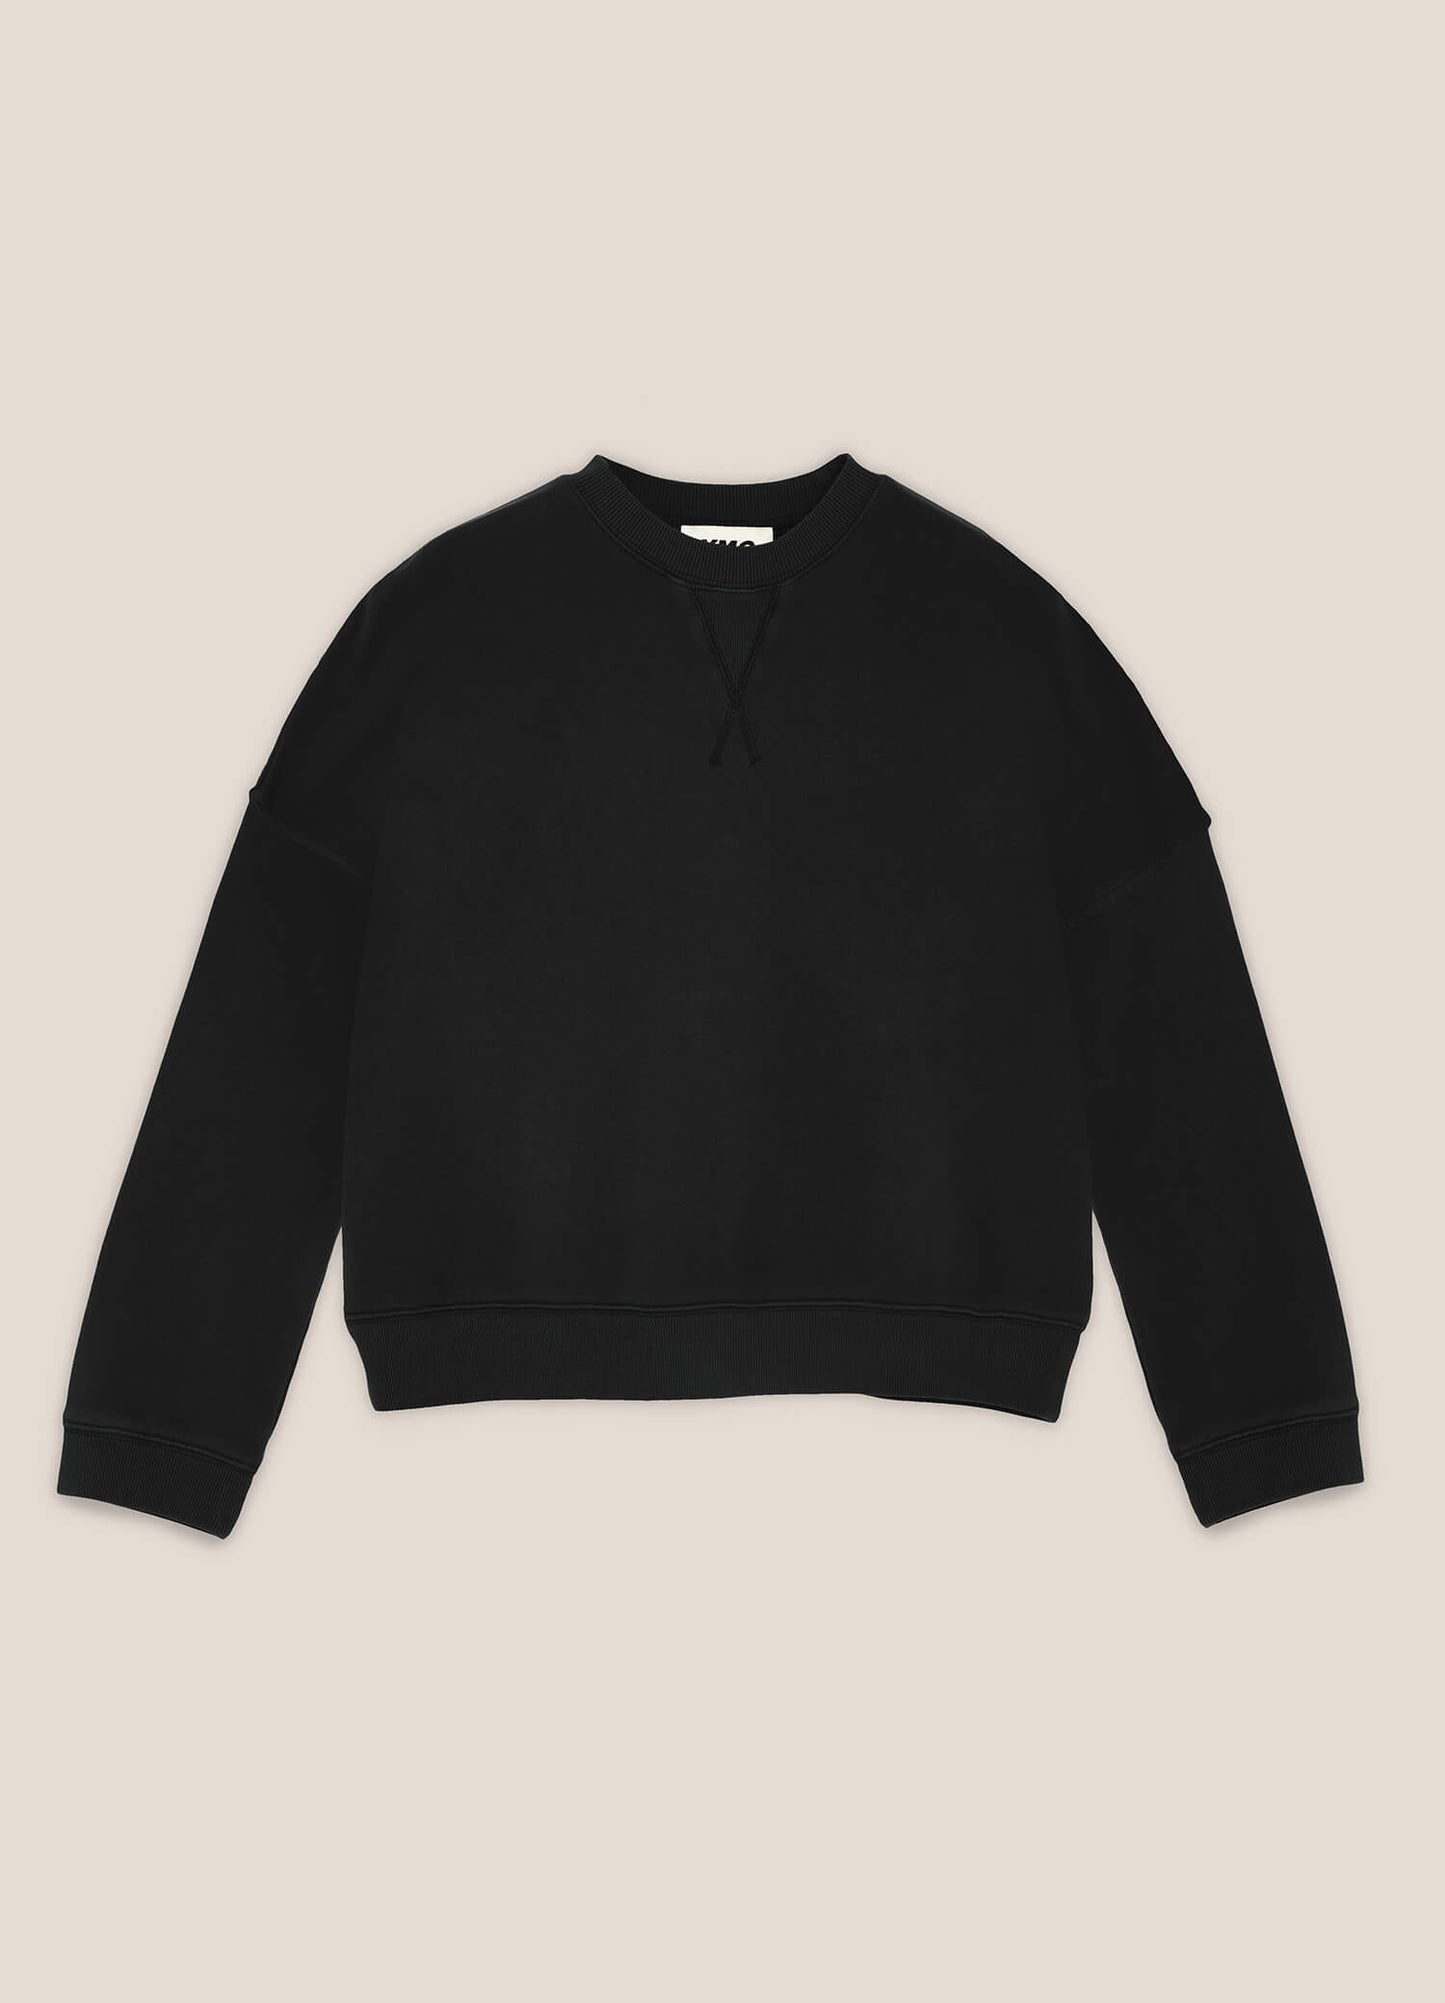 
                  
                    Almost Grown Sweatshirt - Black
                  
                